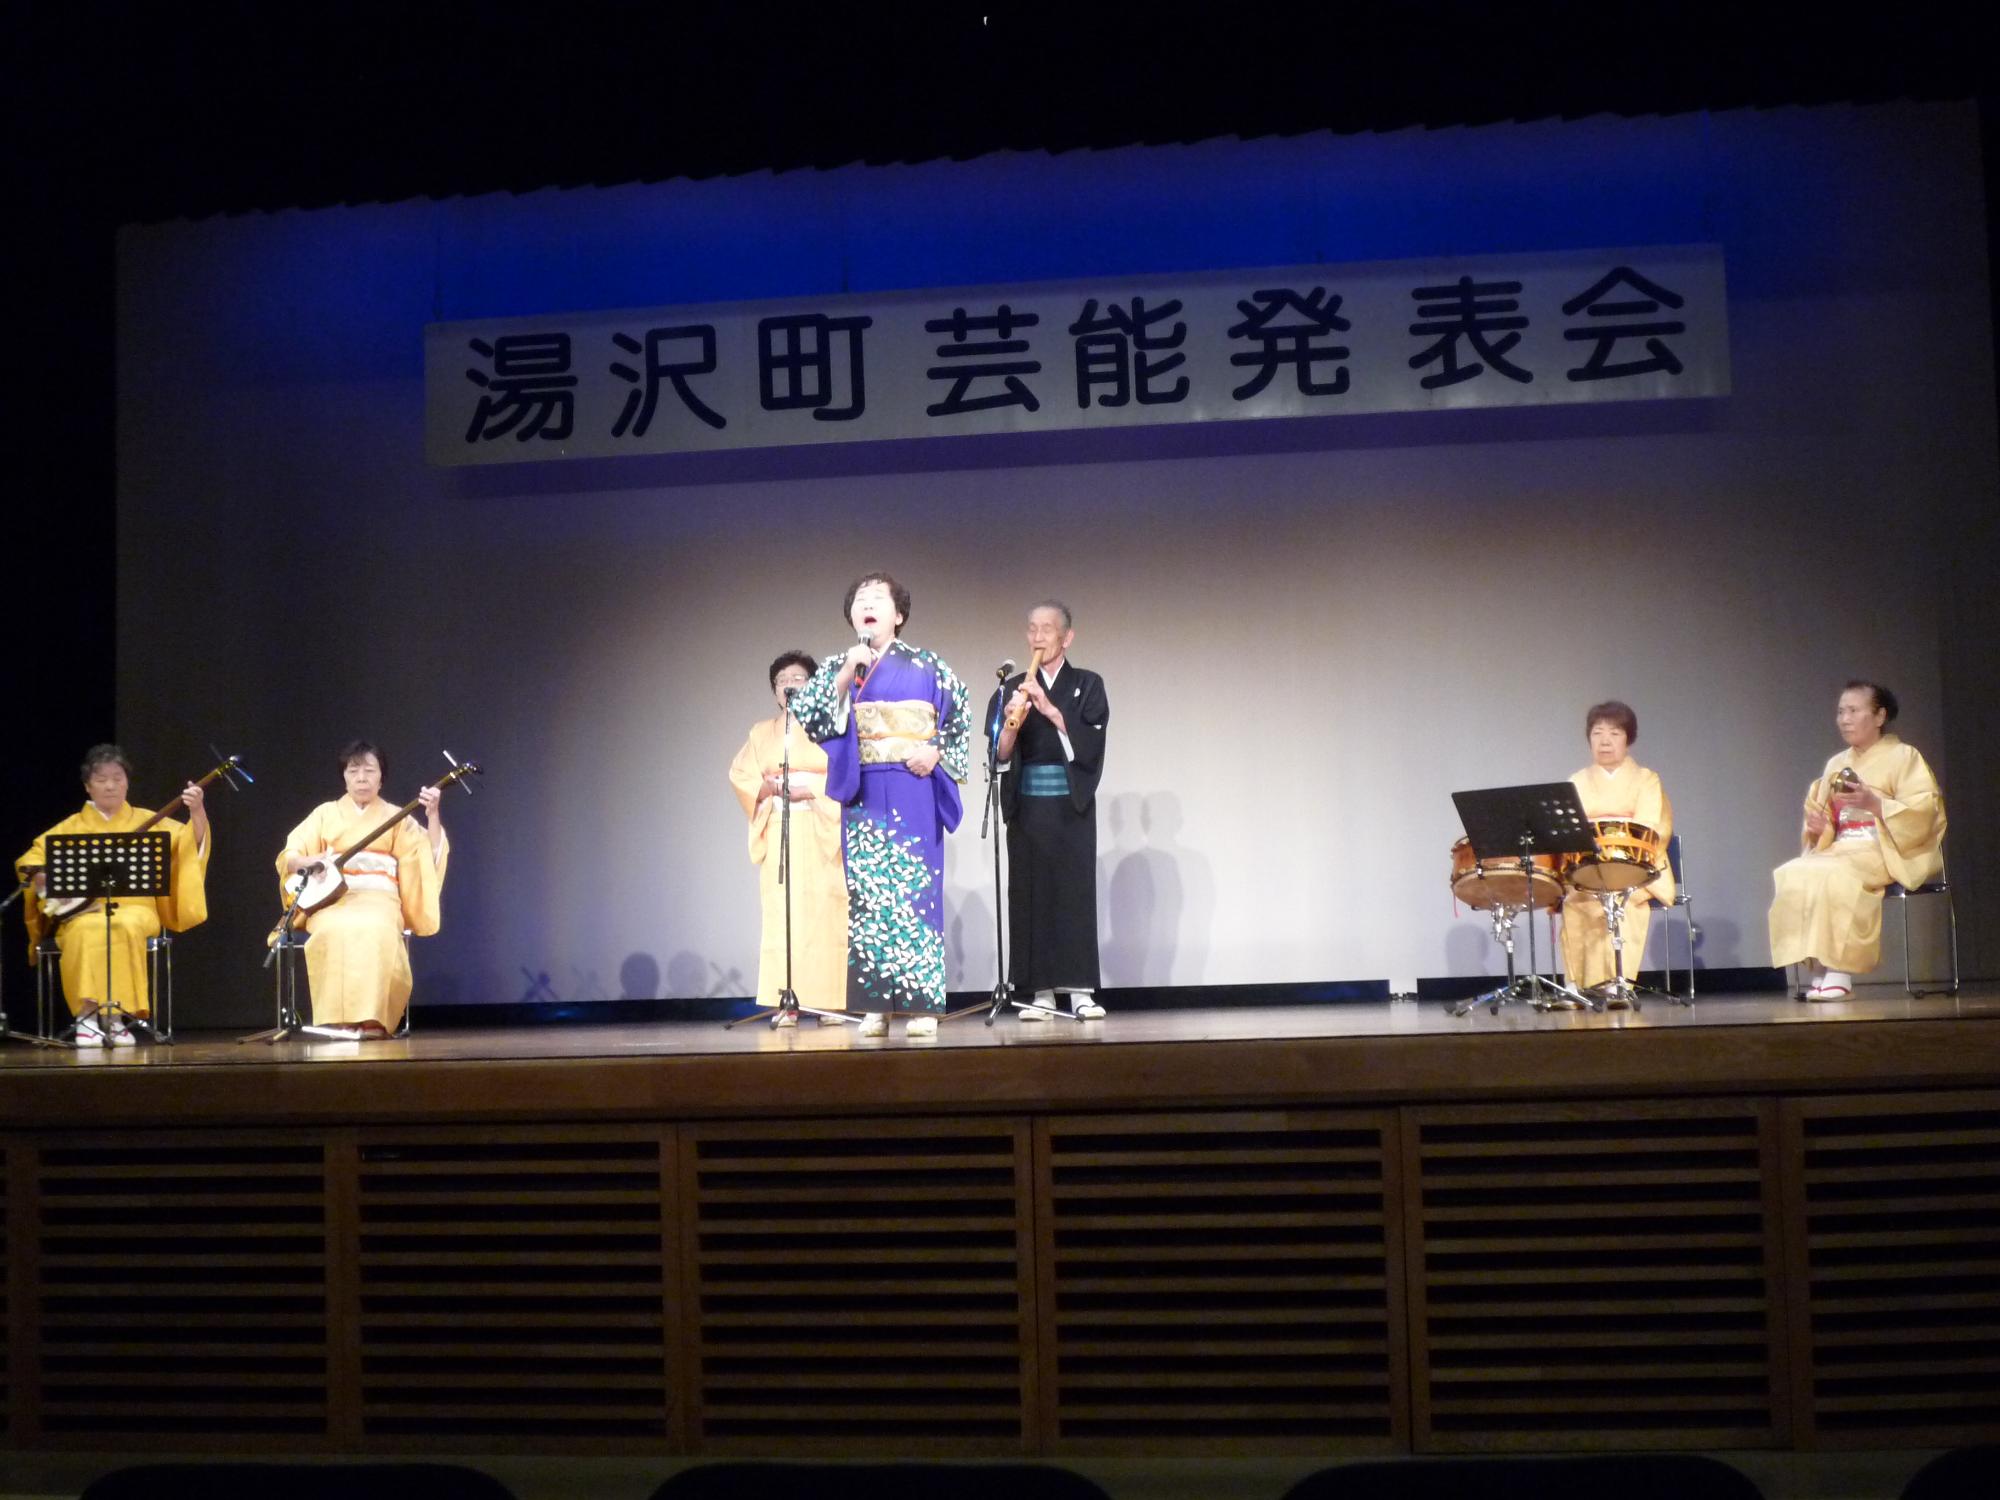 舞台で民謡を歌唱、演奏するのすみれ会のメンバーの写真